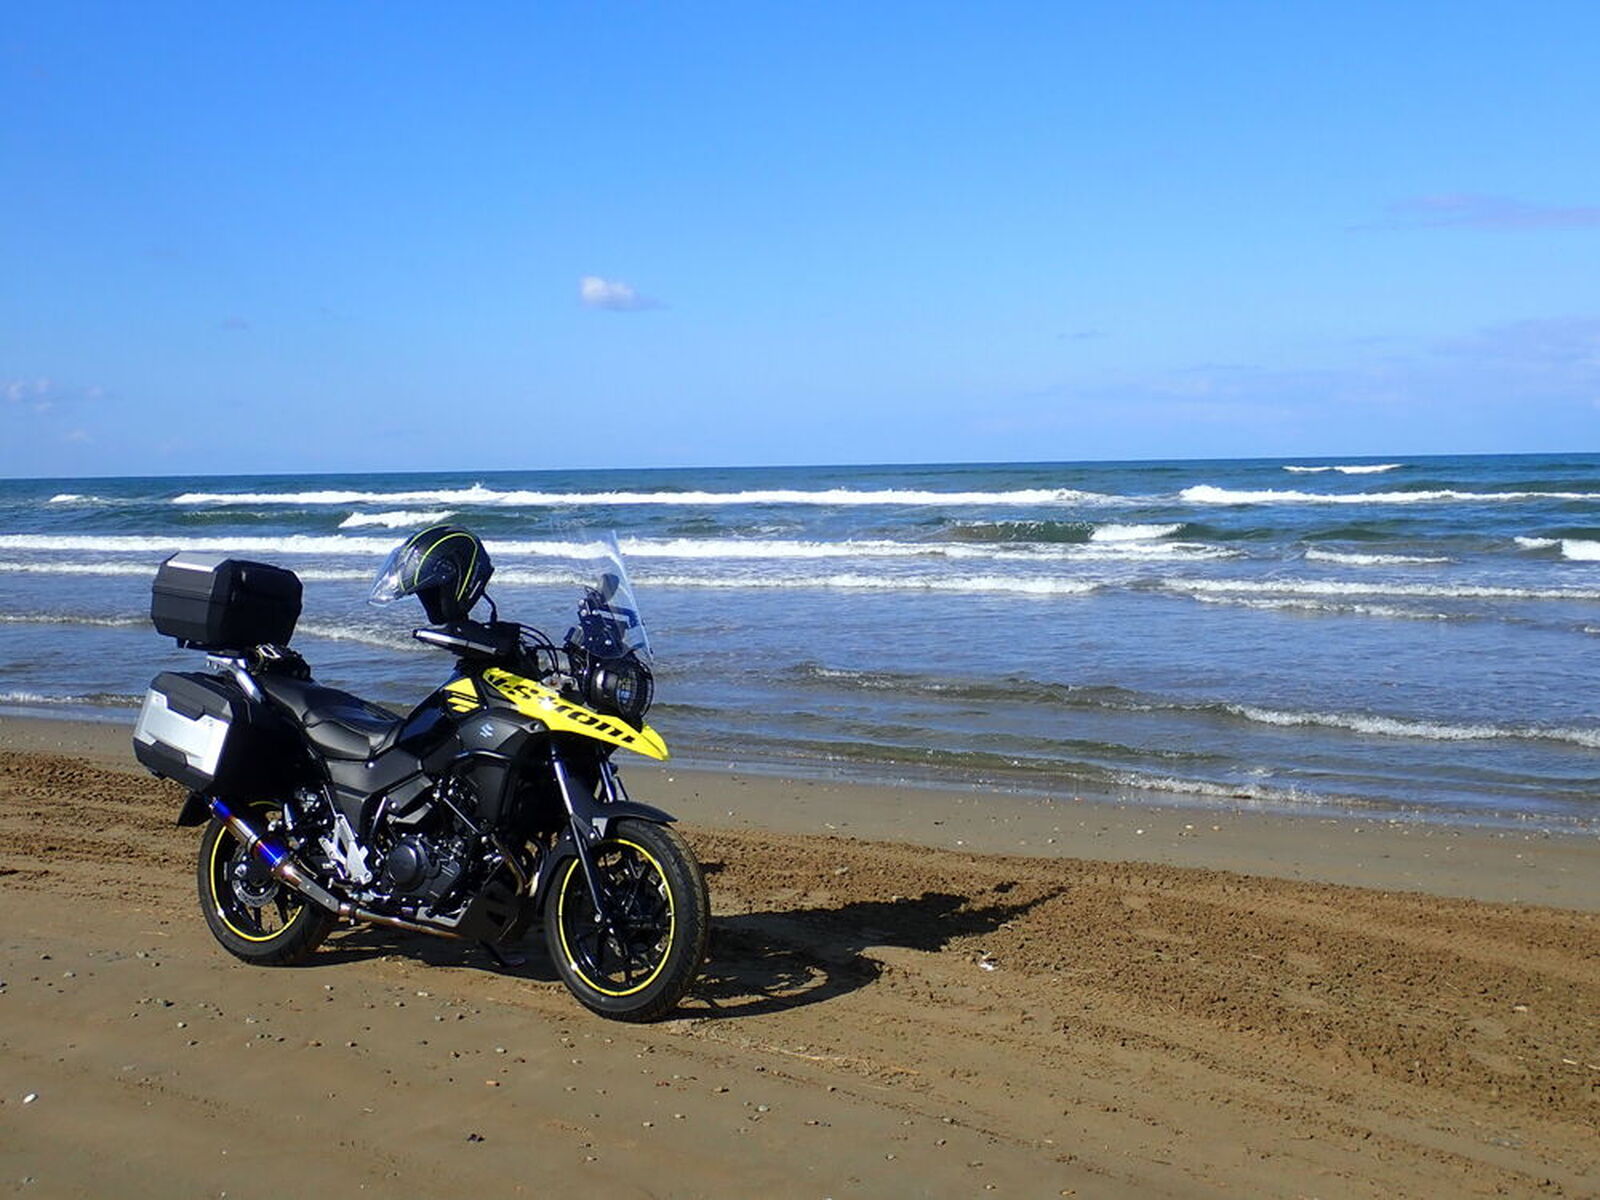 【みんなで作るおすすめツーリング情報】 一度は行きたい、石川県・千里浜なぎさドライブウエイ - ウェビック バイクニュース